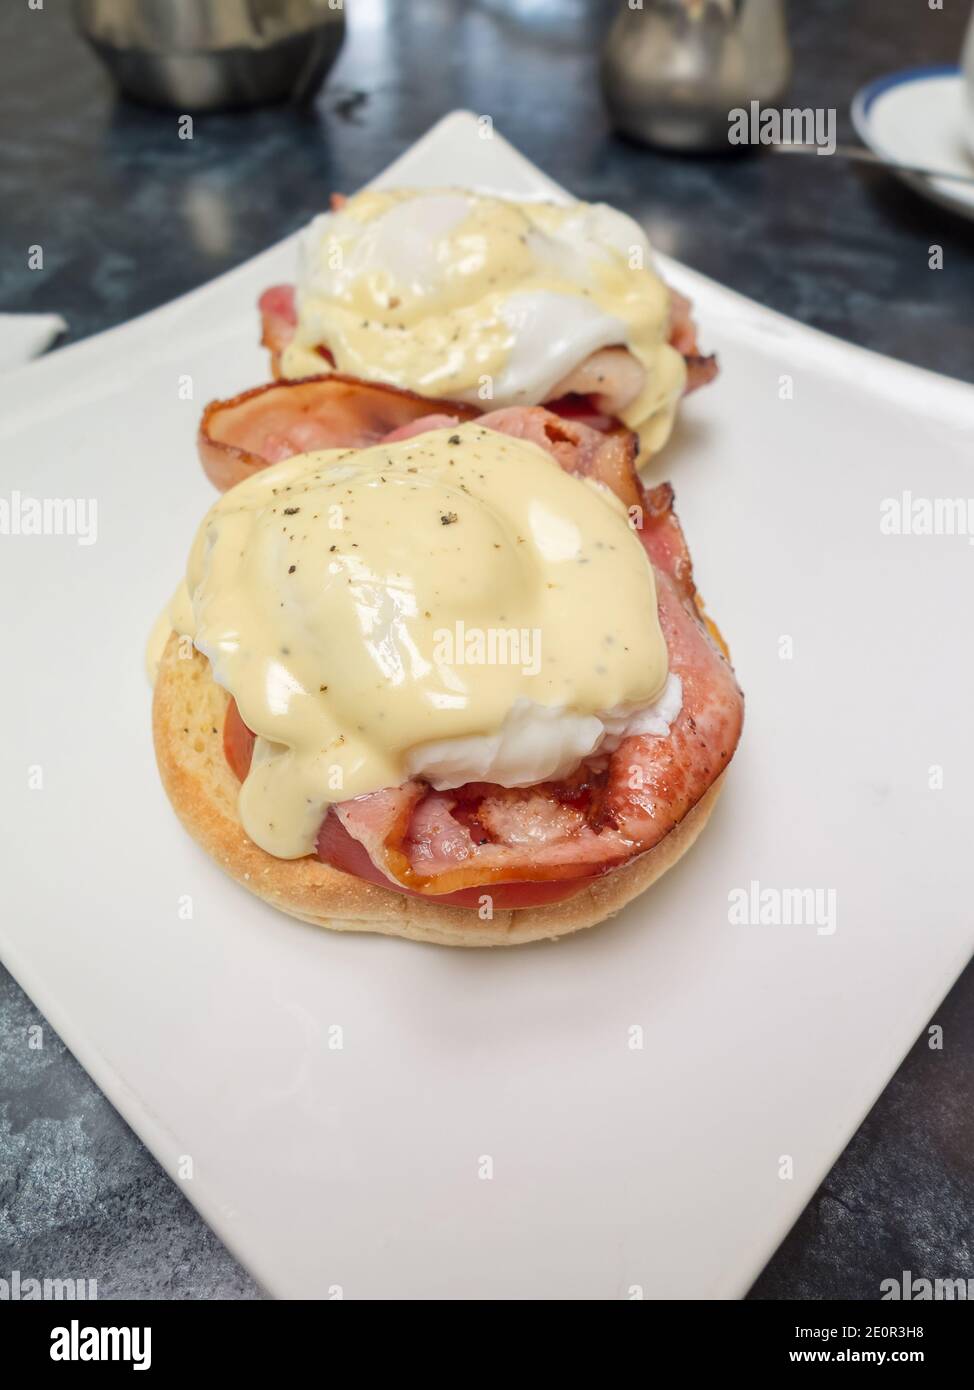 Huevos beicon canadiense Benedict huevo escalfado y tomate en un muffin inglés con salsa hollandaise Foto de stock